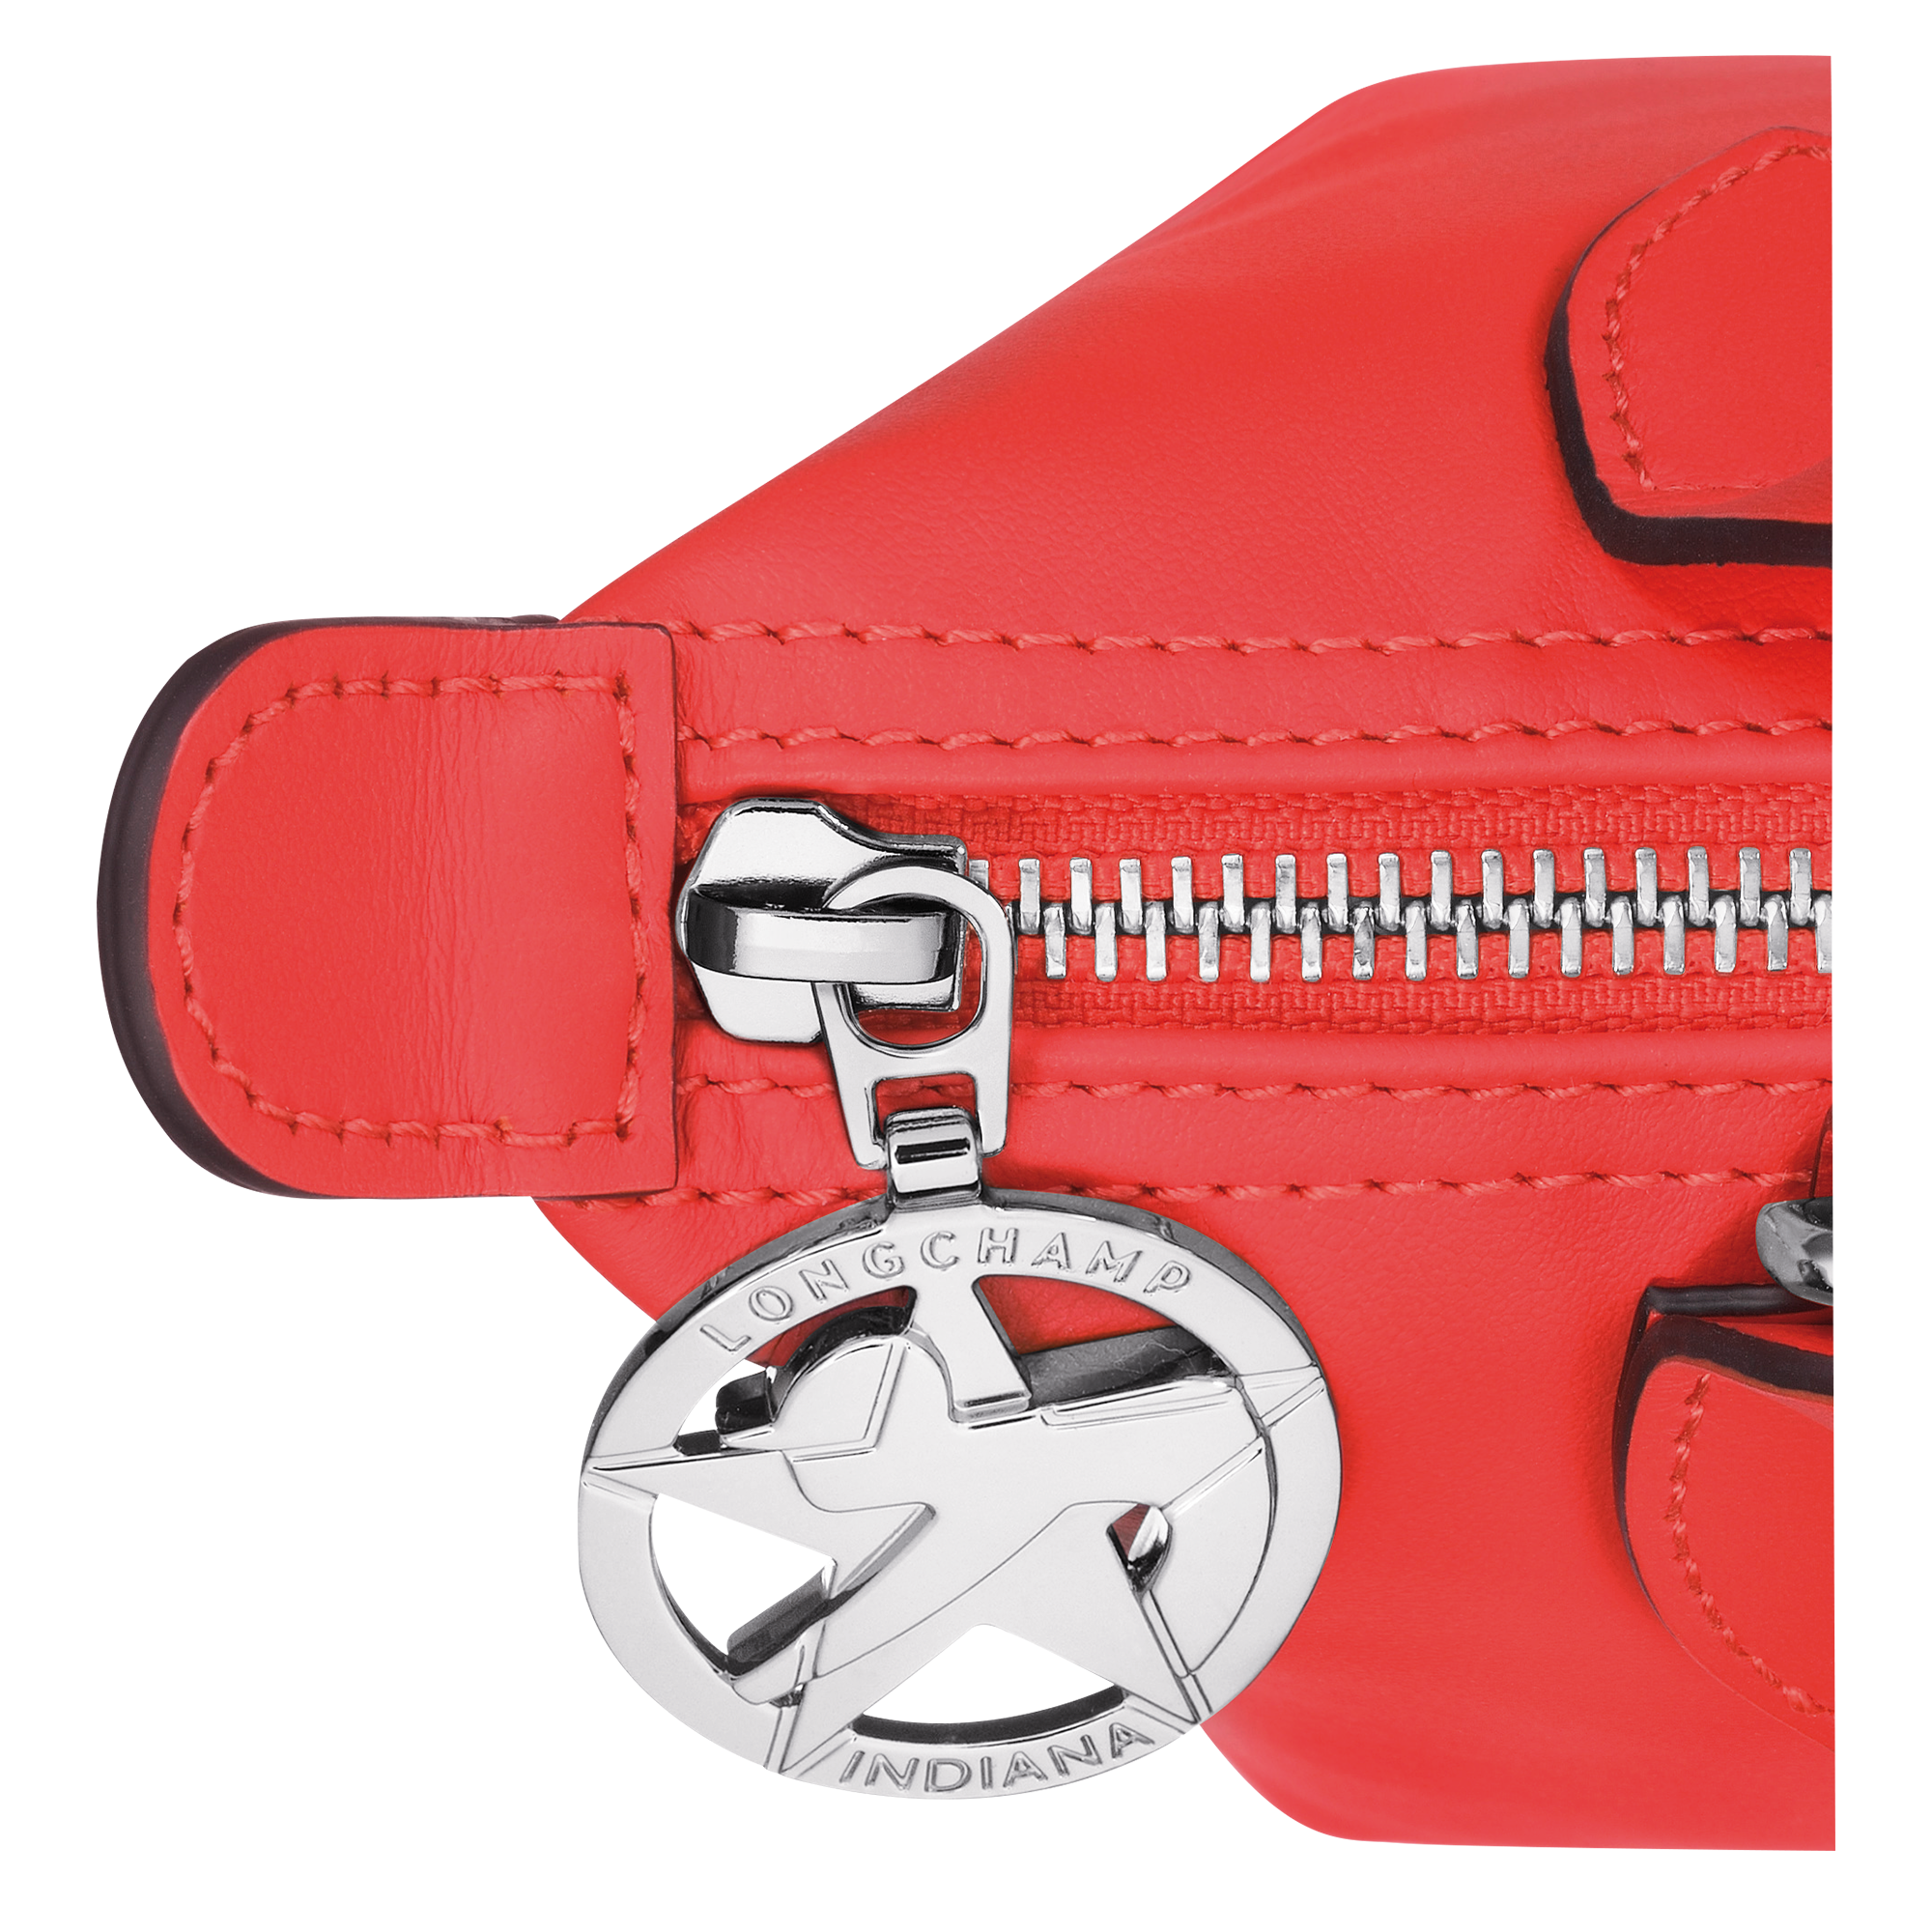 Longchamp x Robert Indiana Handbag XS, Red